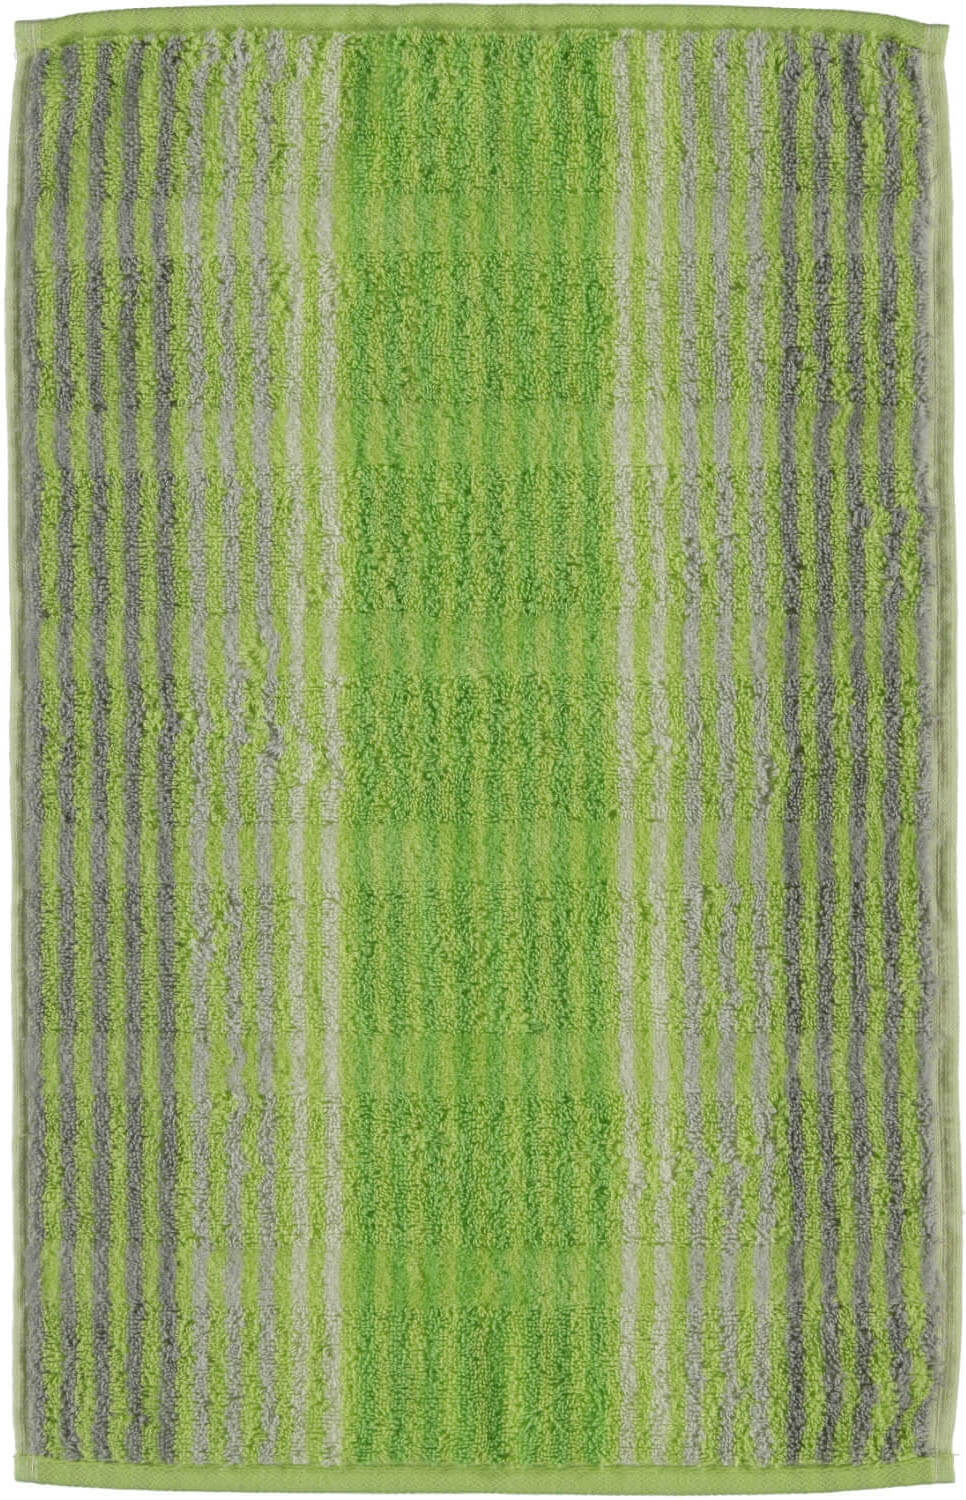 Полотенце Noblesse Сashmere Kiwi ☞ Размер: 50 x 100 см